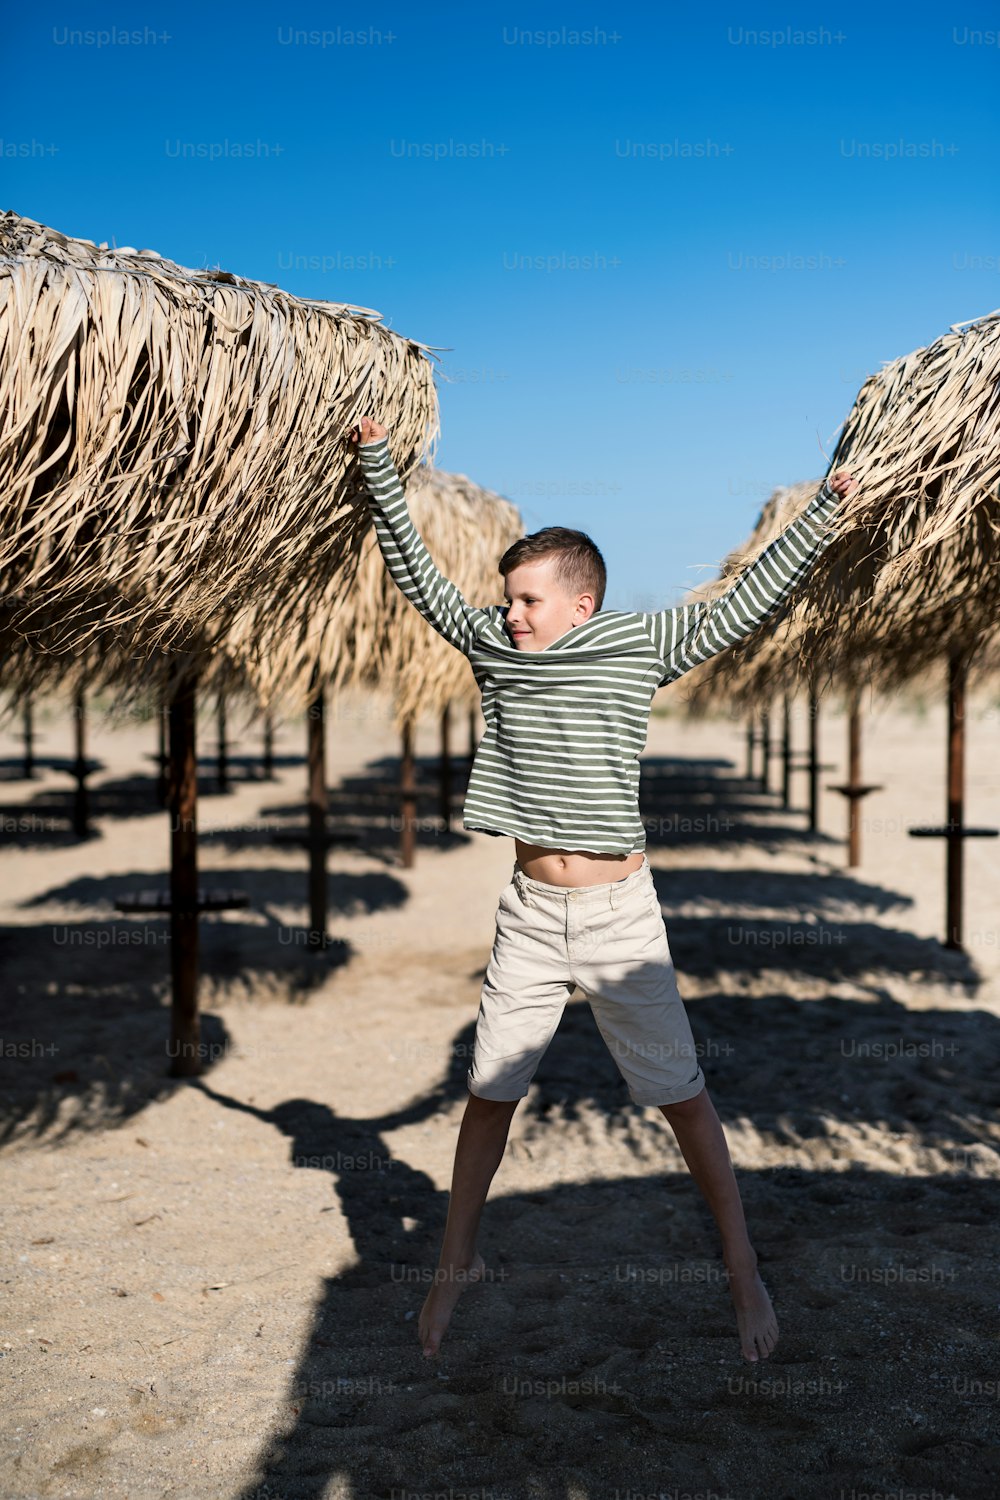 Un niño pequeño alegre jugando al aire libre en la playa de arena, saltando.